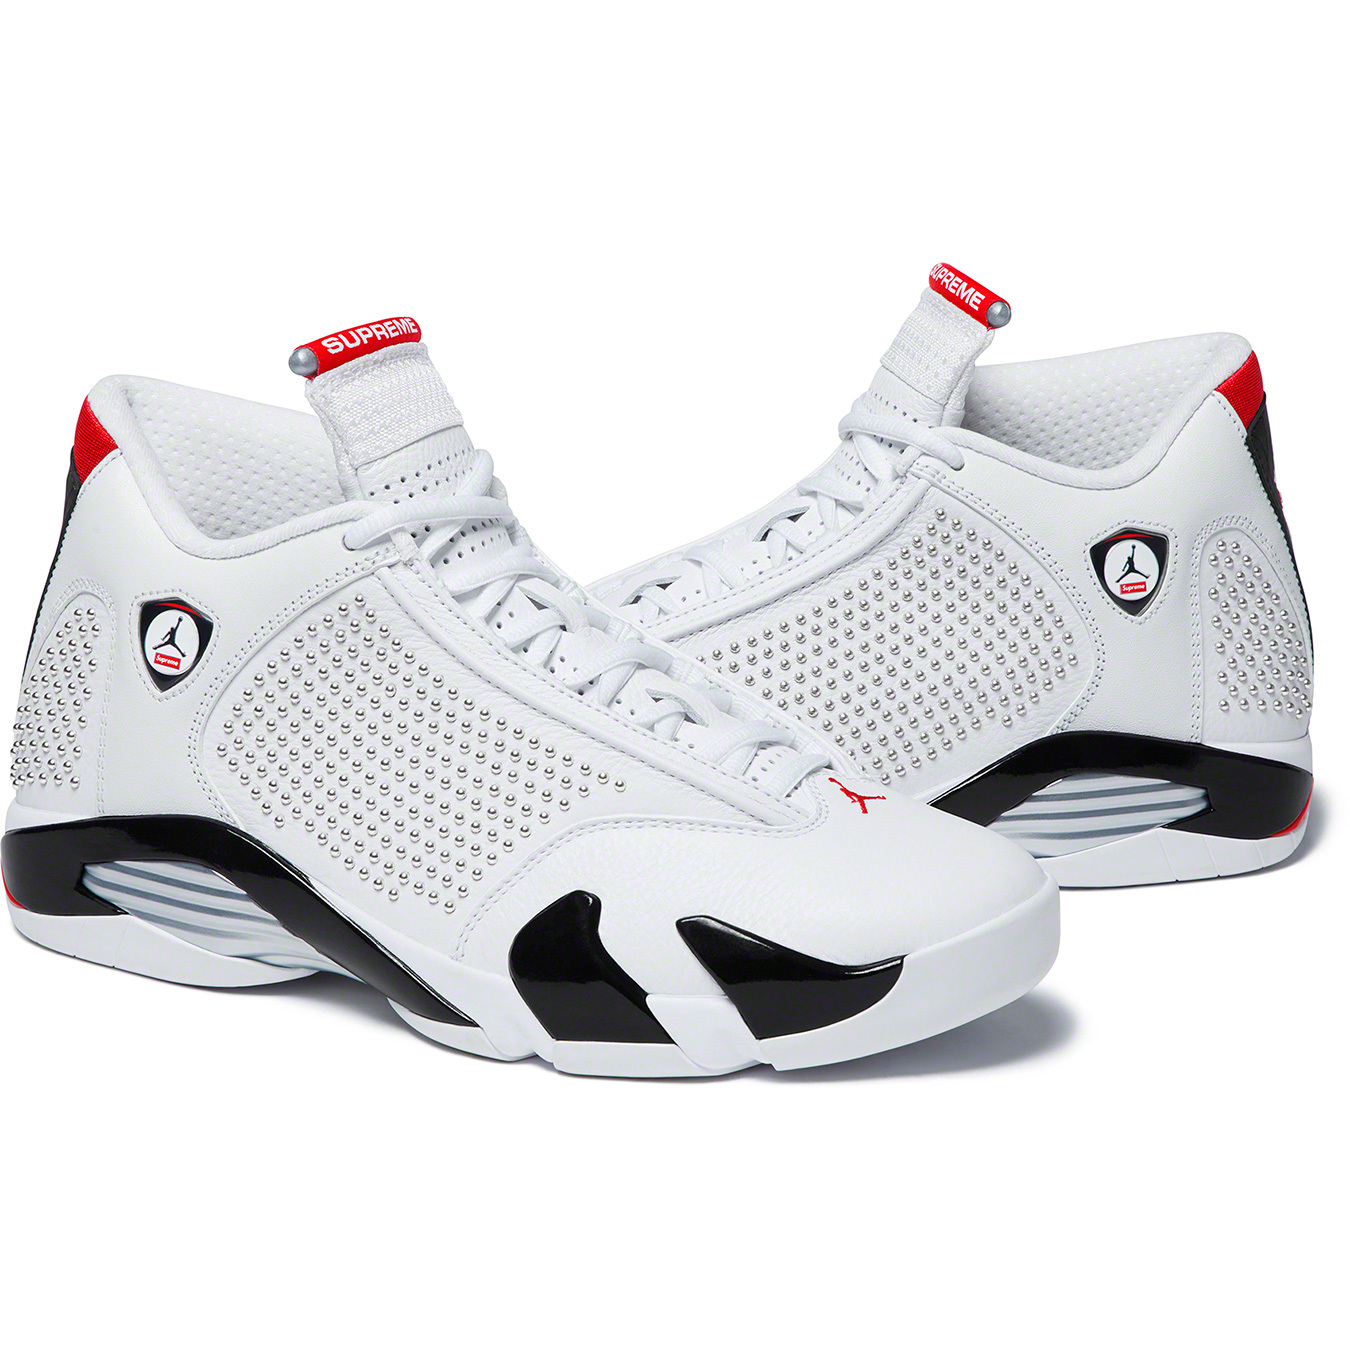 Supreme®/Nike® Air Jordan 14